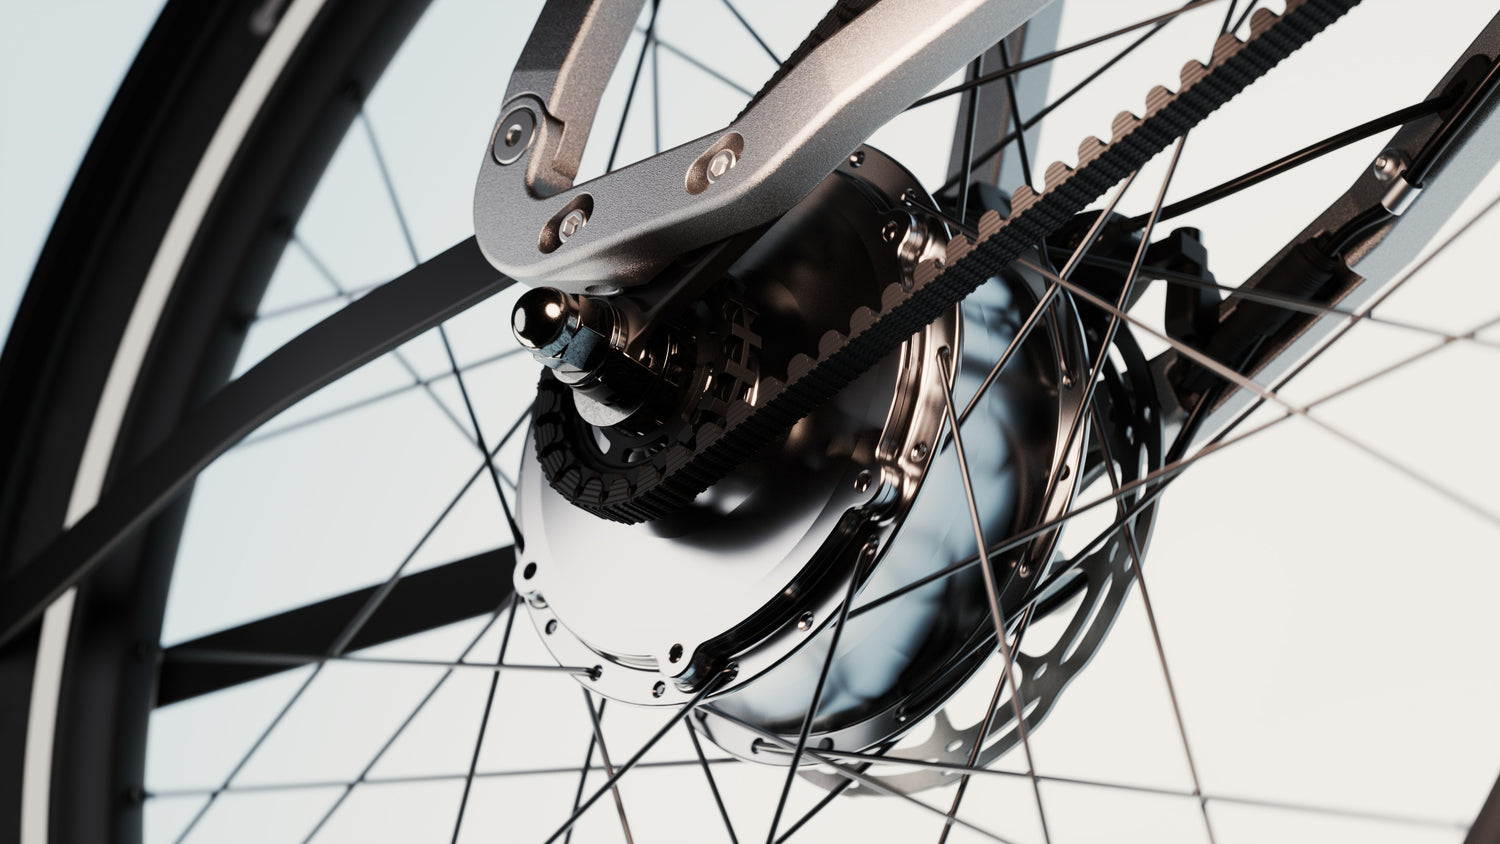 moteur haut rendement roue arrière du vélo anod hybrid fait en france à supercondensateurs